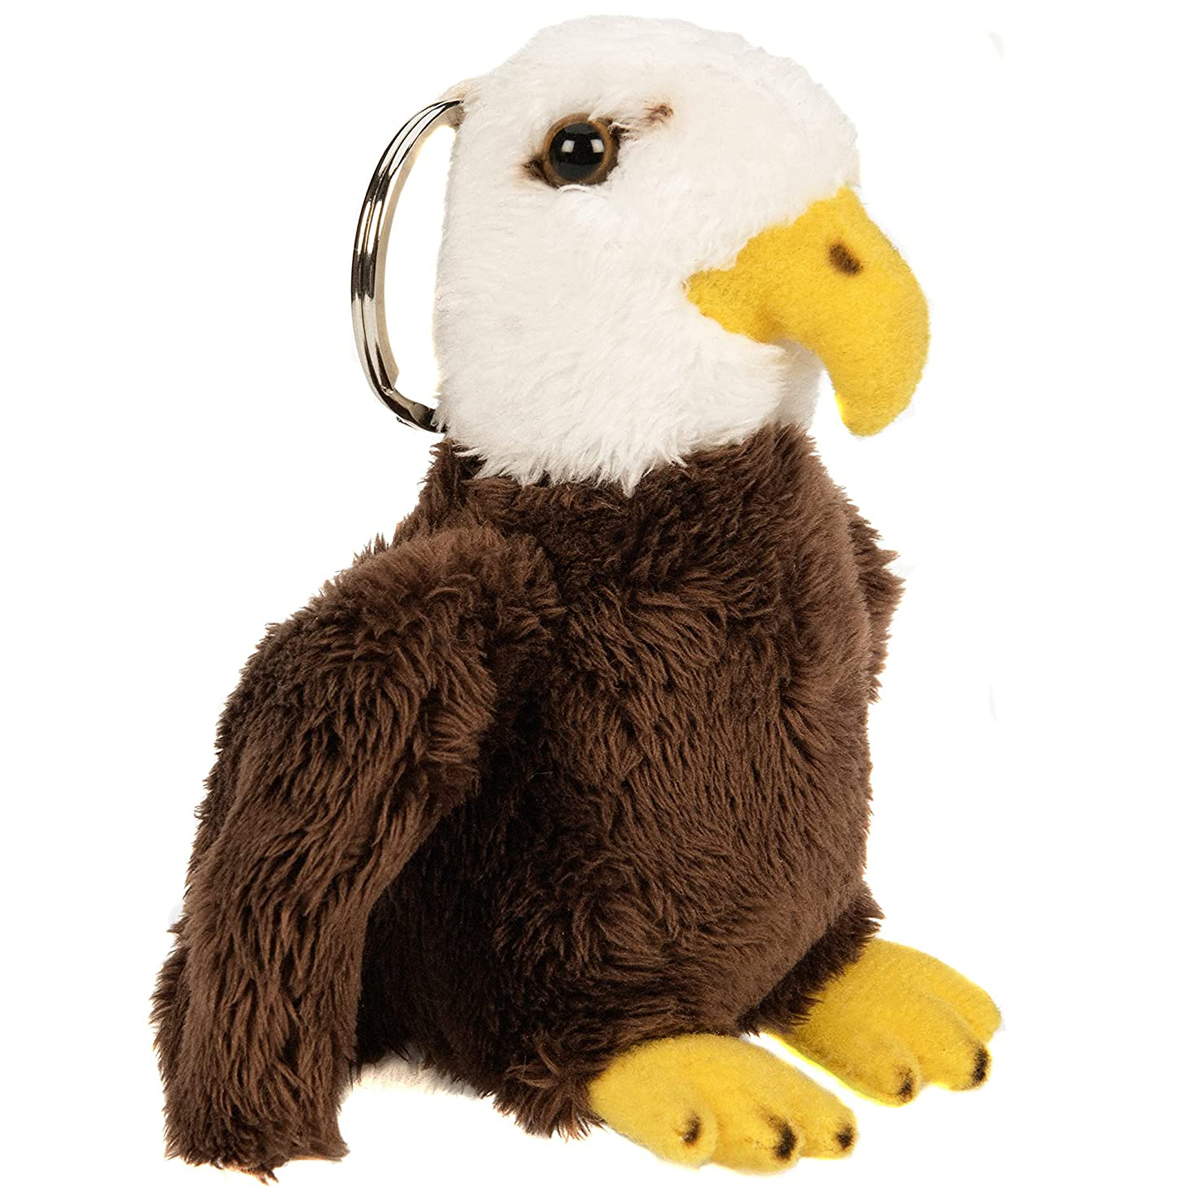 Uni-Toys - Weißkopfseeadler mit Schlüsselanhänger - 11 cm (Höhe) - Adler, Vogel - Plüschtier, Kuscheltier